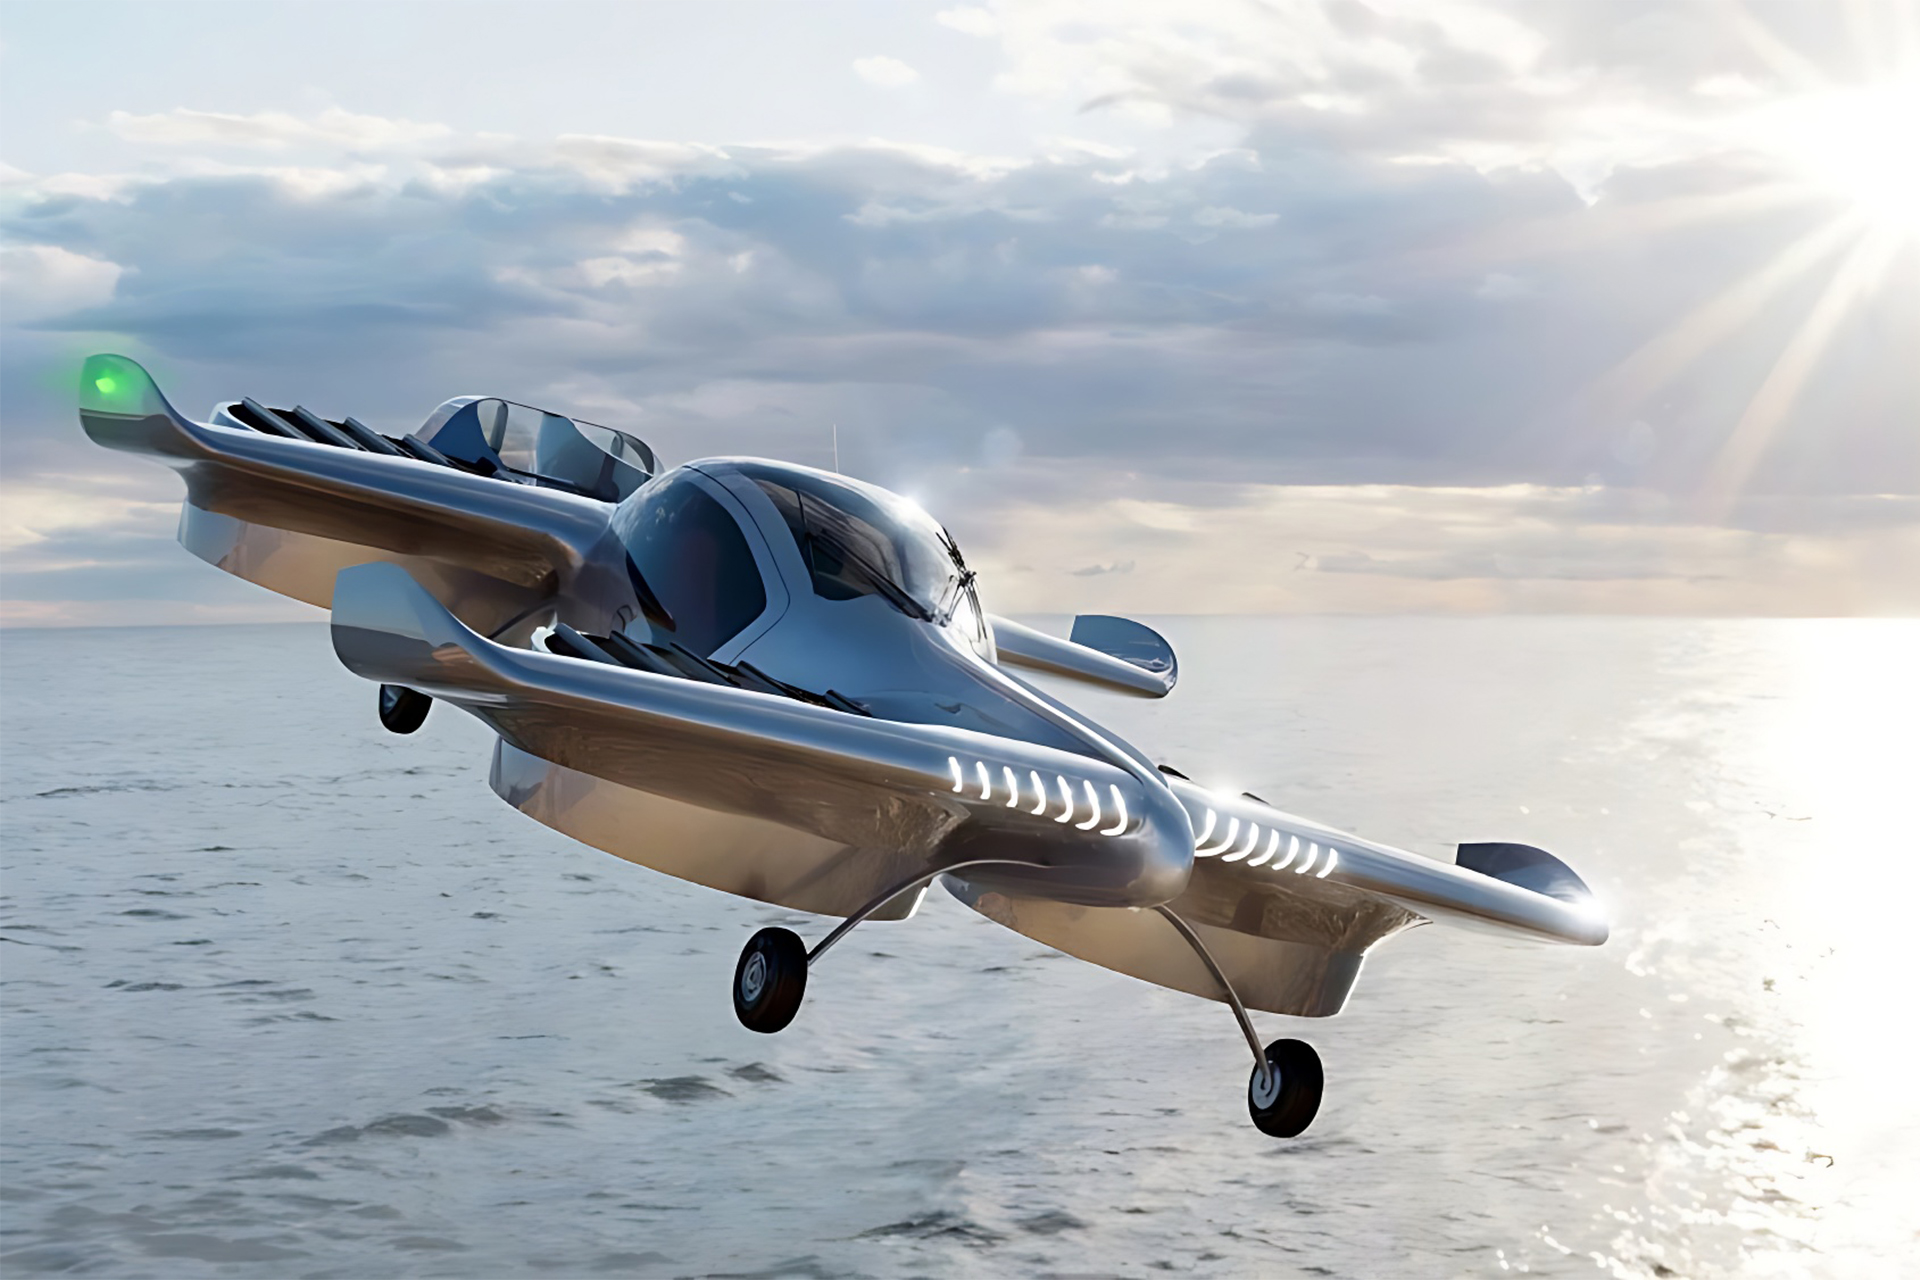 Novo carro elétrico voador faz voo teste, veículo possui uma autonomia de 320 quilômetros